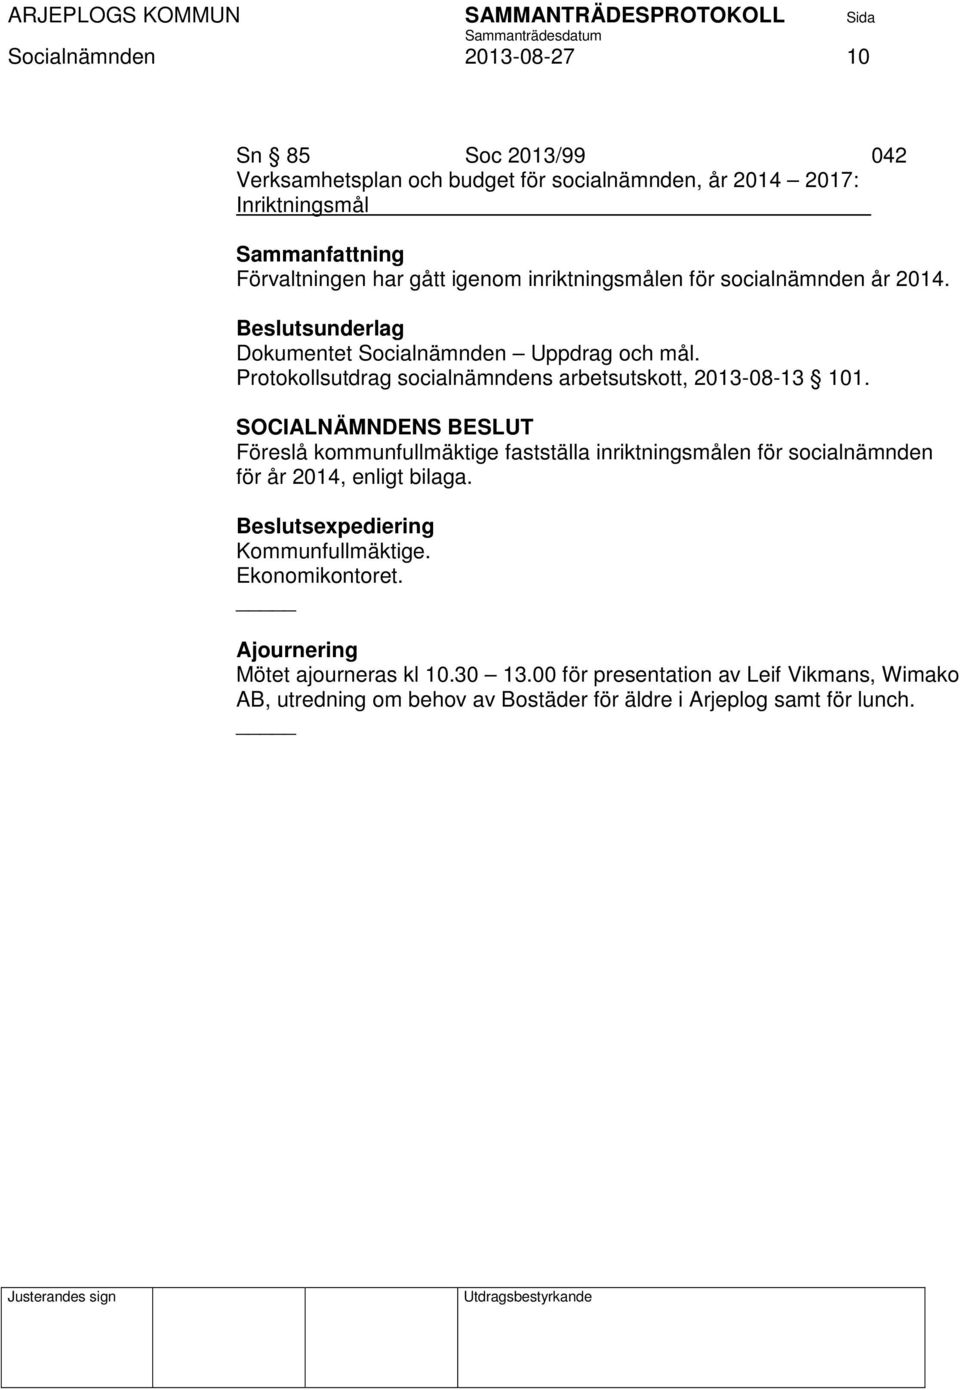 Protokollsutdrag socialnämndens arbetsutskott, 2013-08-13 101.